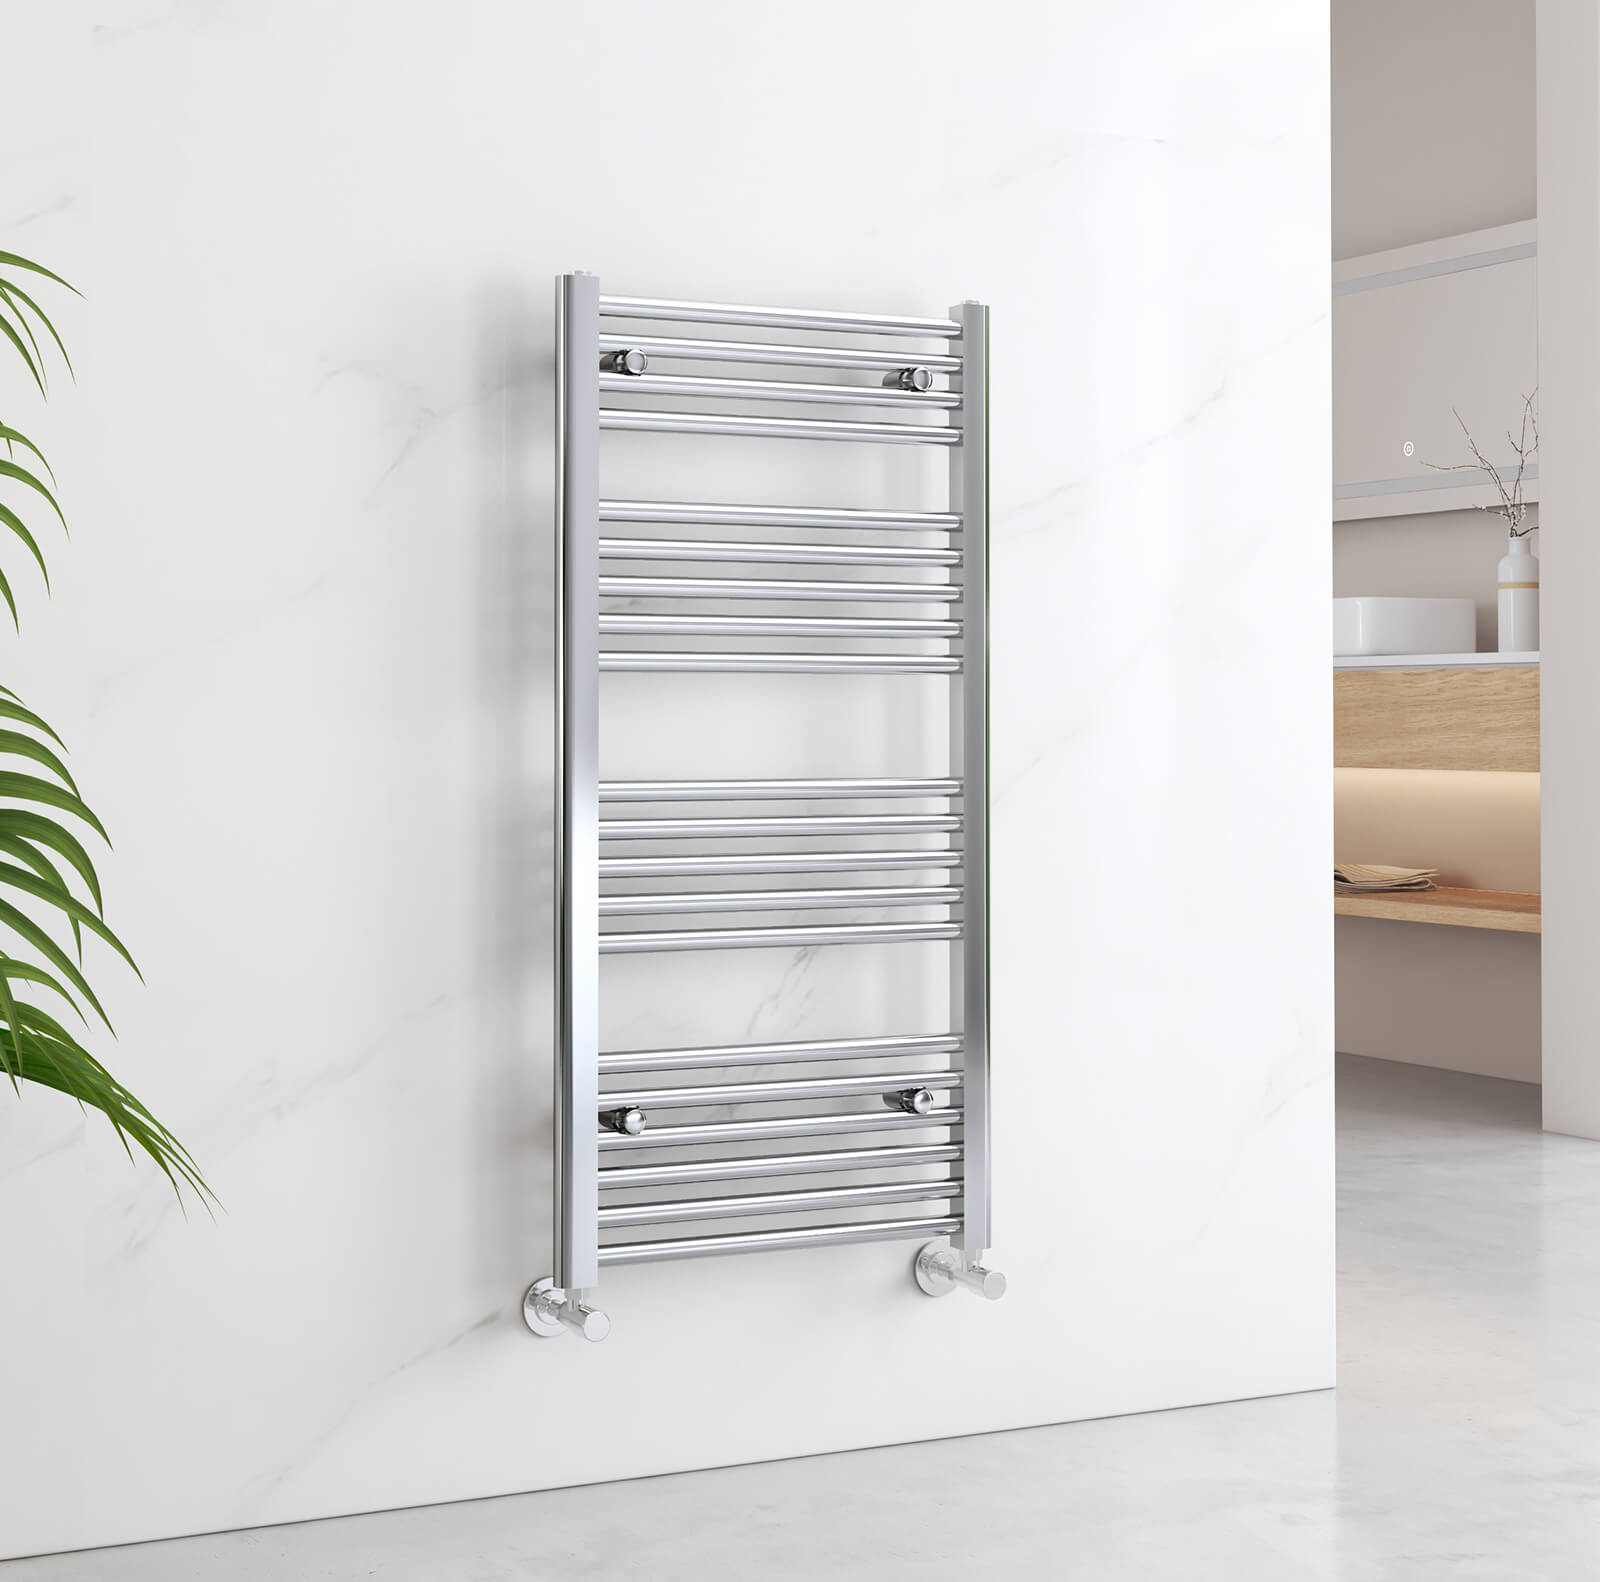 emke towel radiator for bathroom utr1050s1c